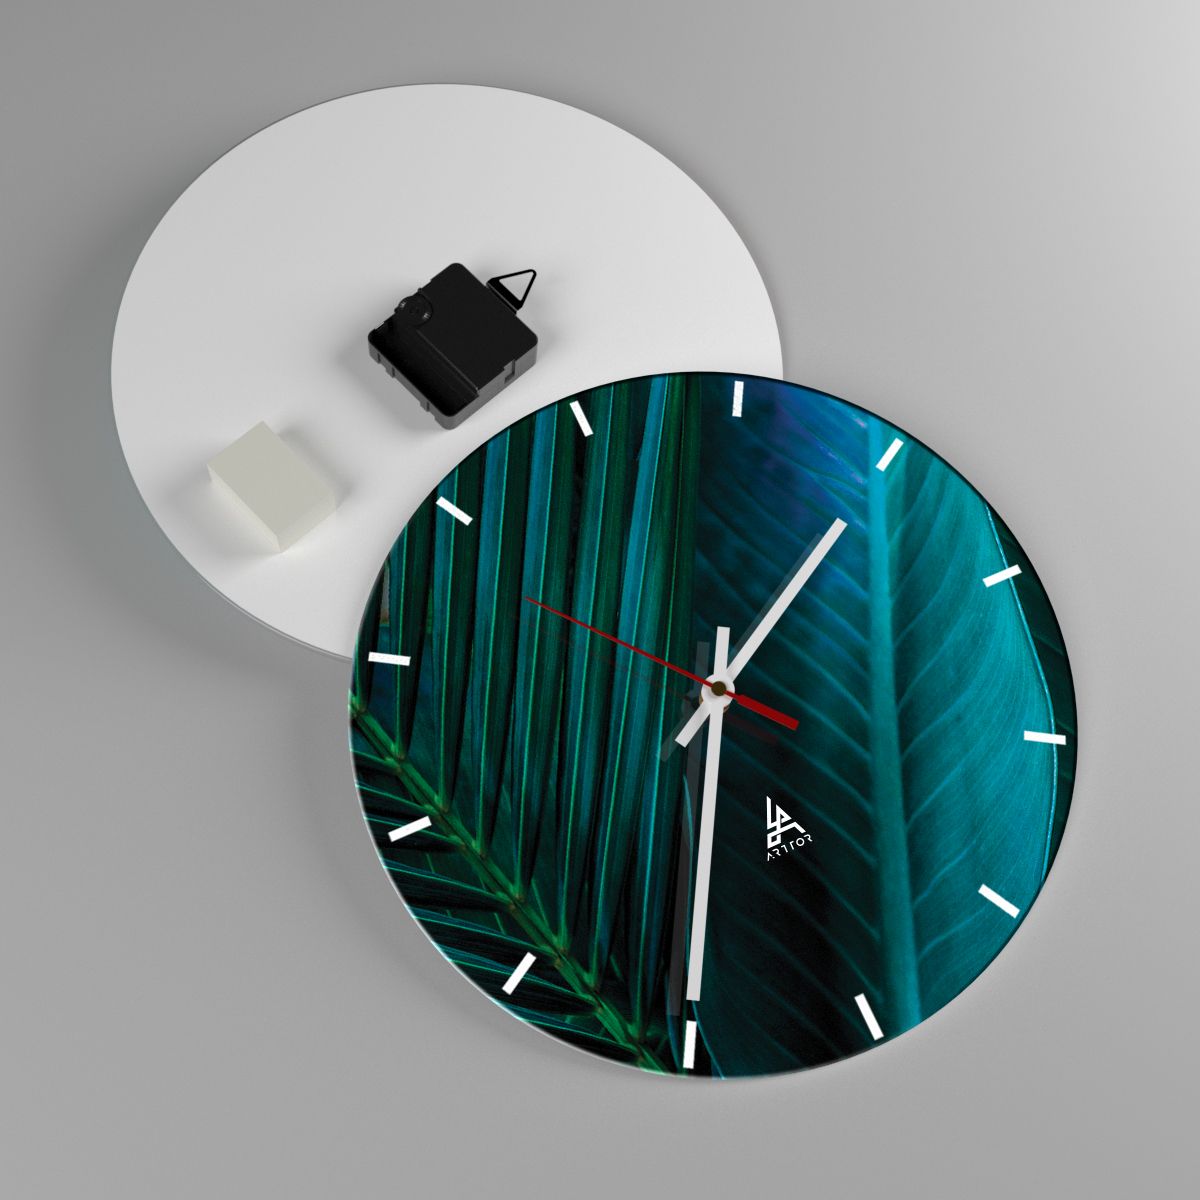 Reloj de pared Hojas Verdes, Reloj de pared Planta Tropical, Reloj de pared Naturaleza, Reloj de pared Arte, Reloj de pared Botánica